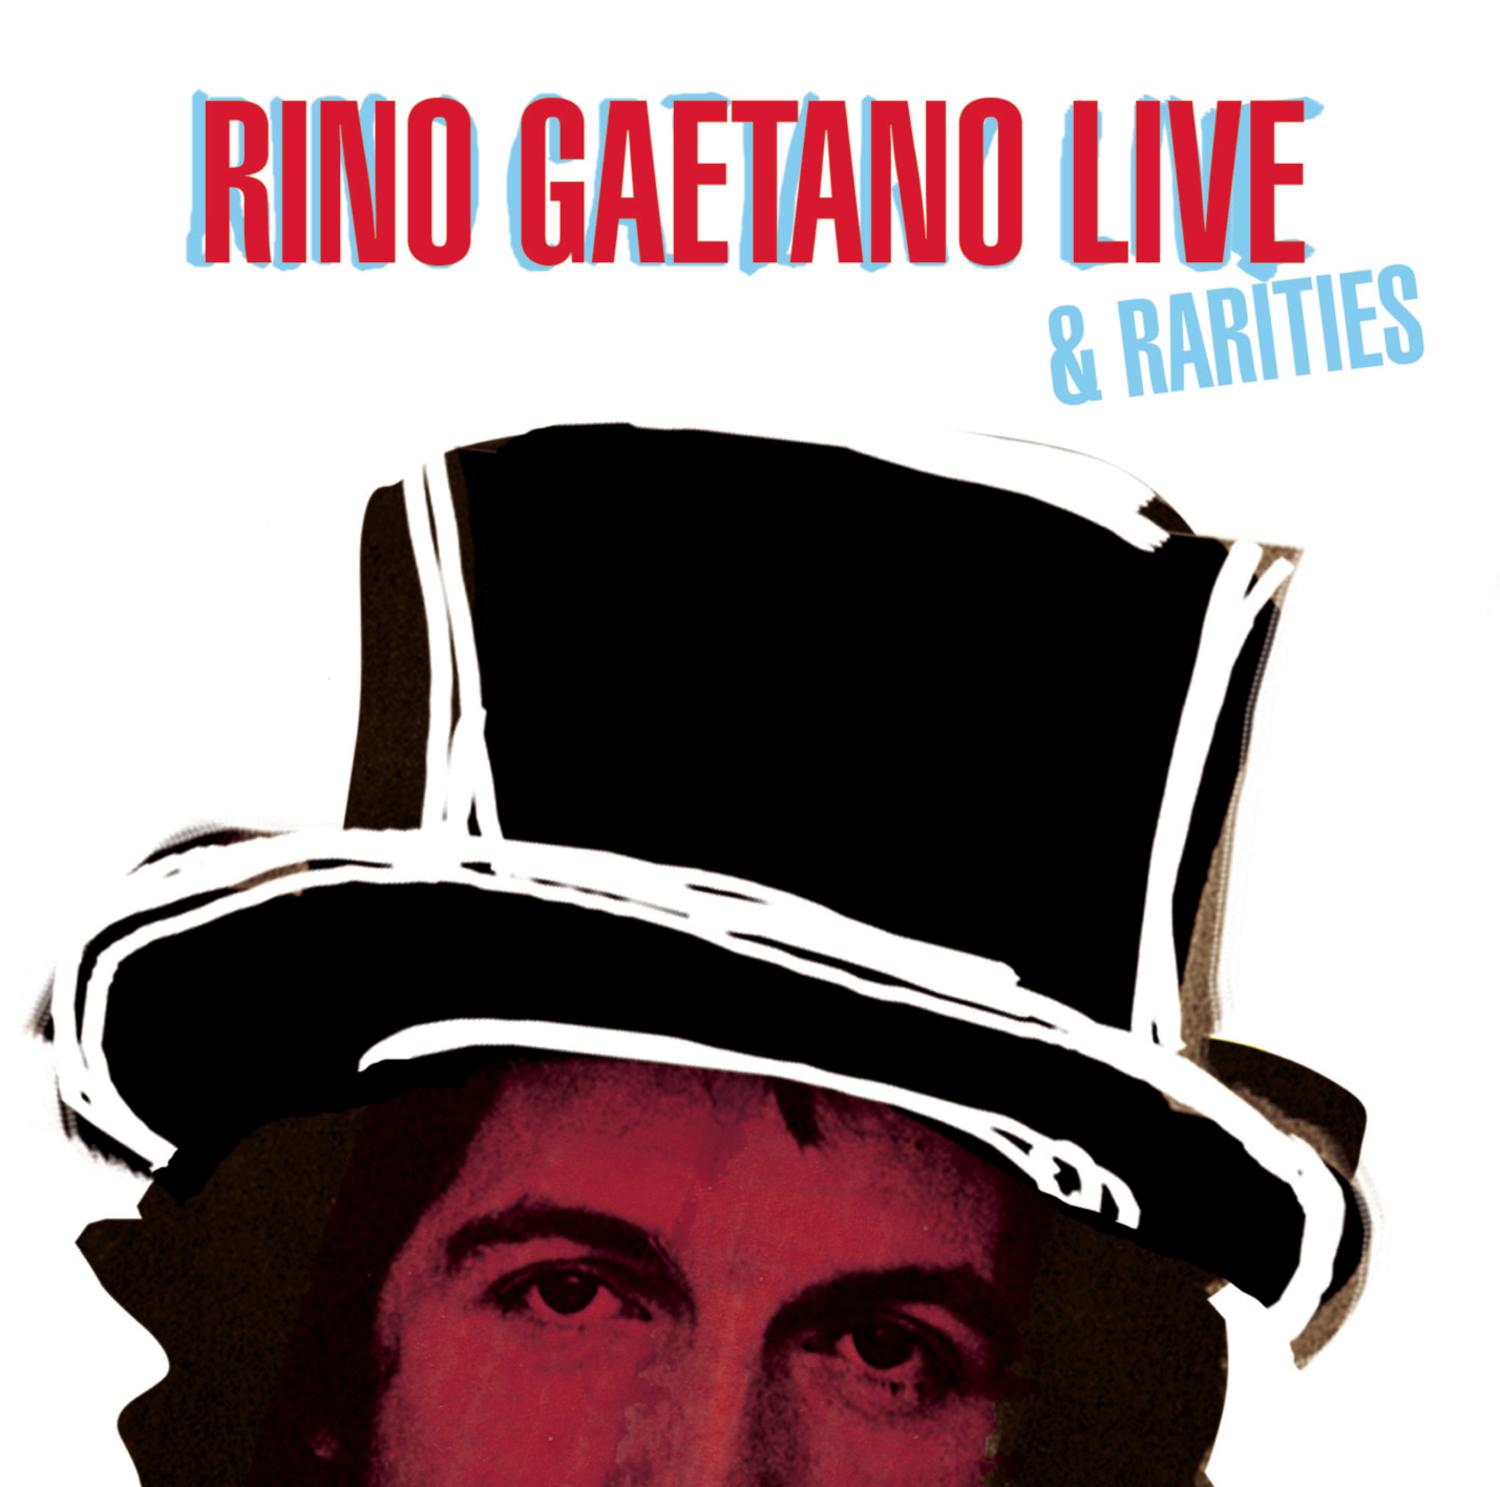 Rino Gaetano Live & Rarities